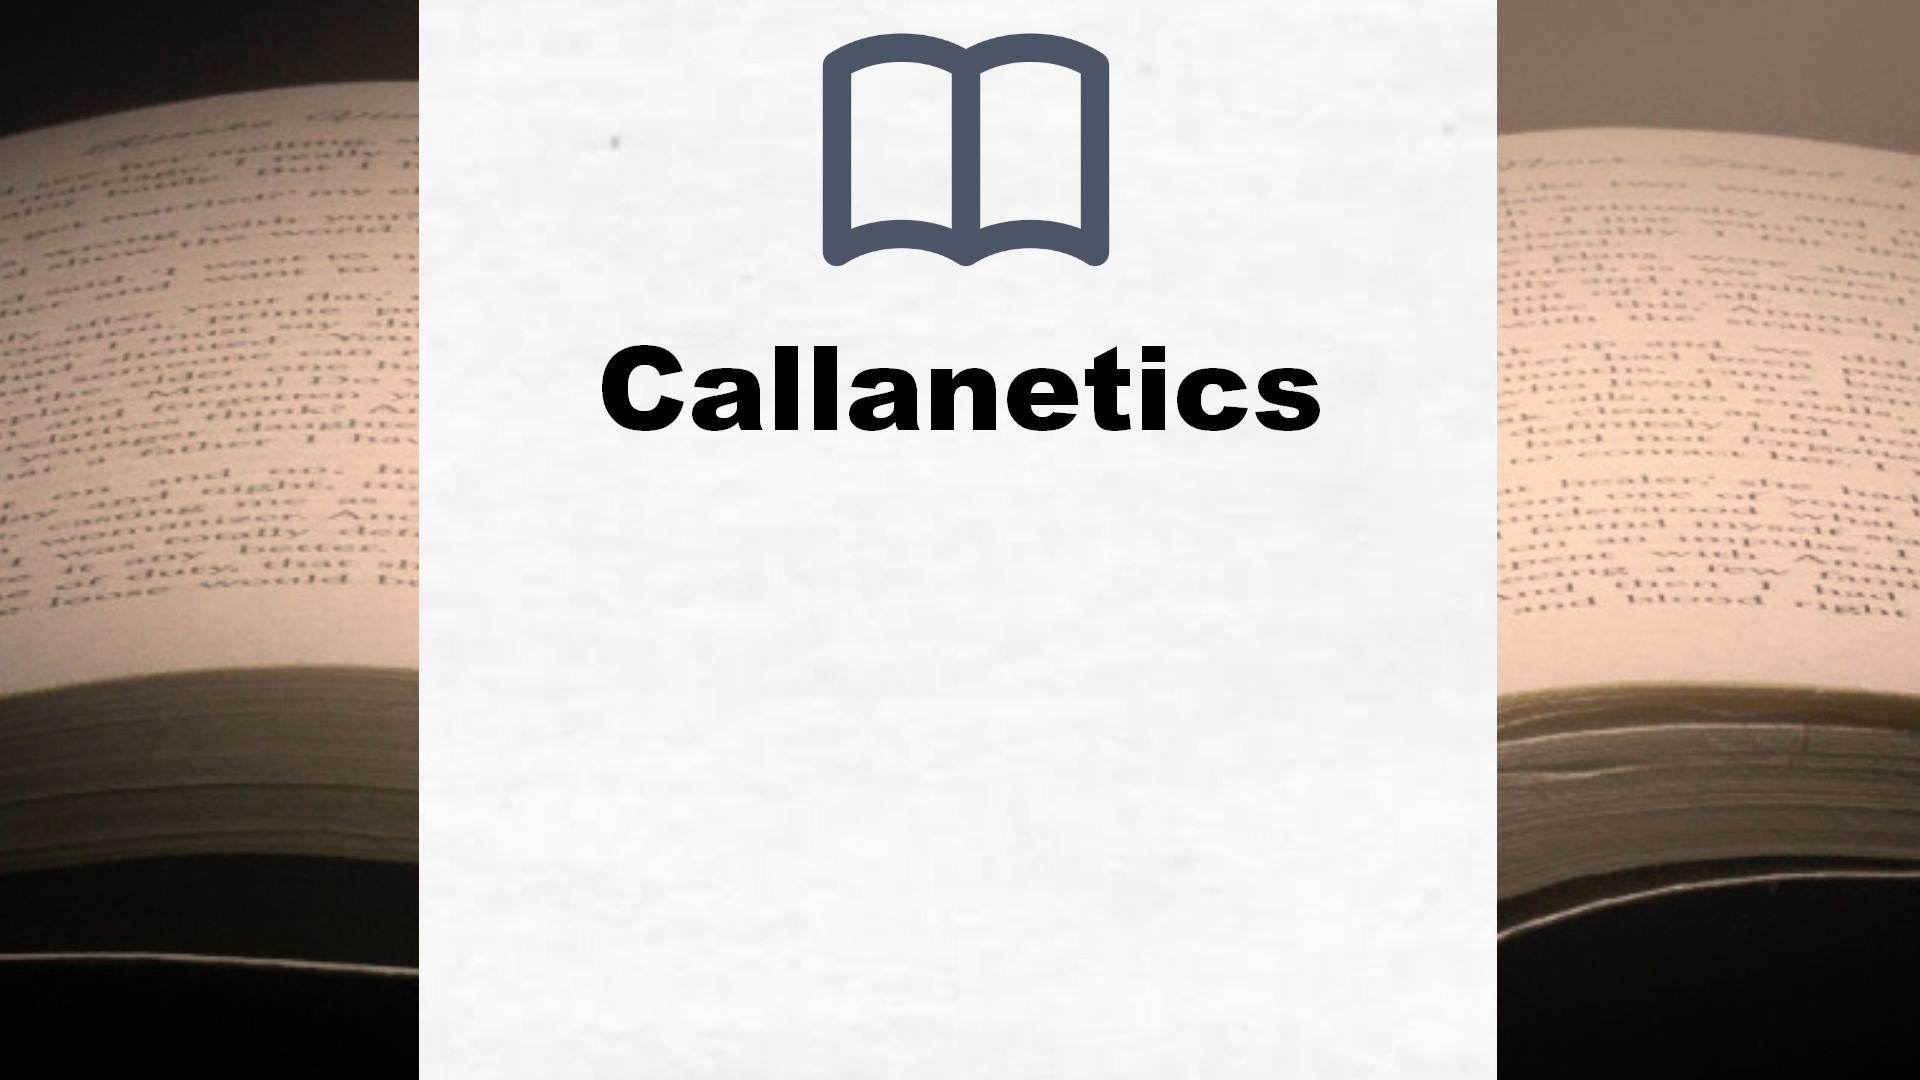 Bücher über Callanetics